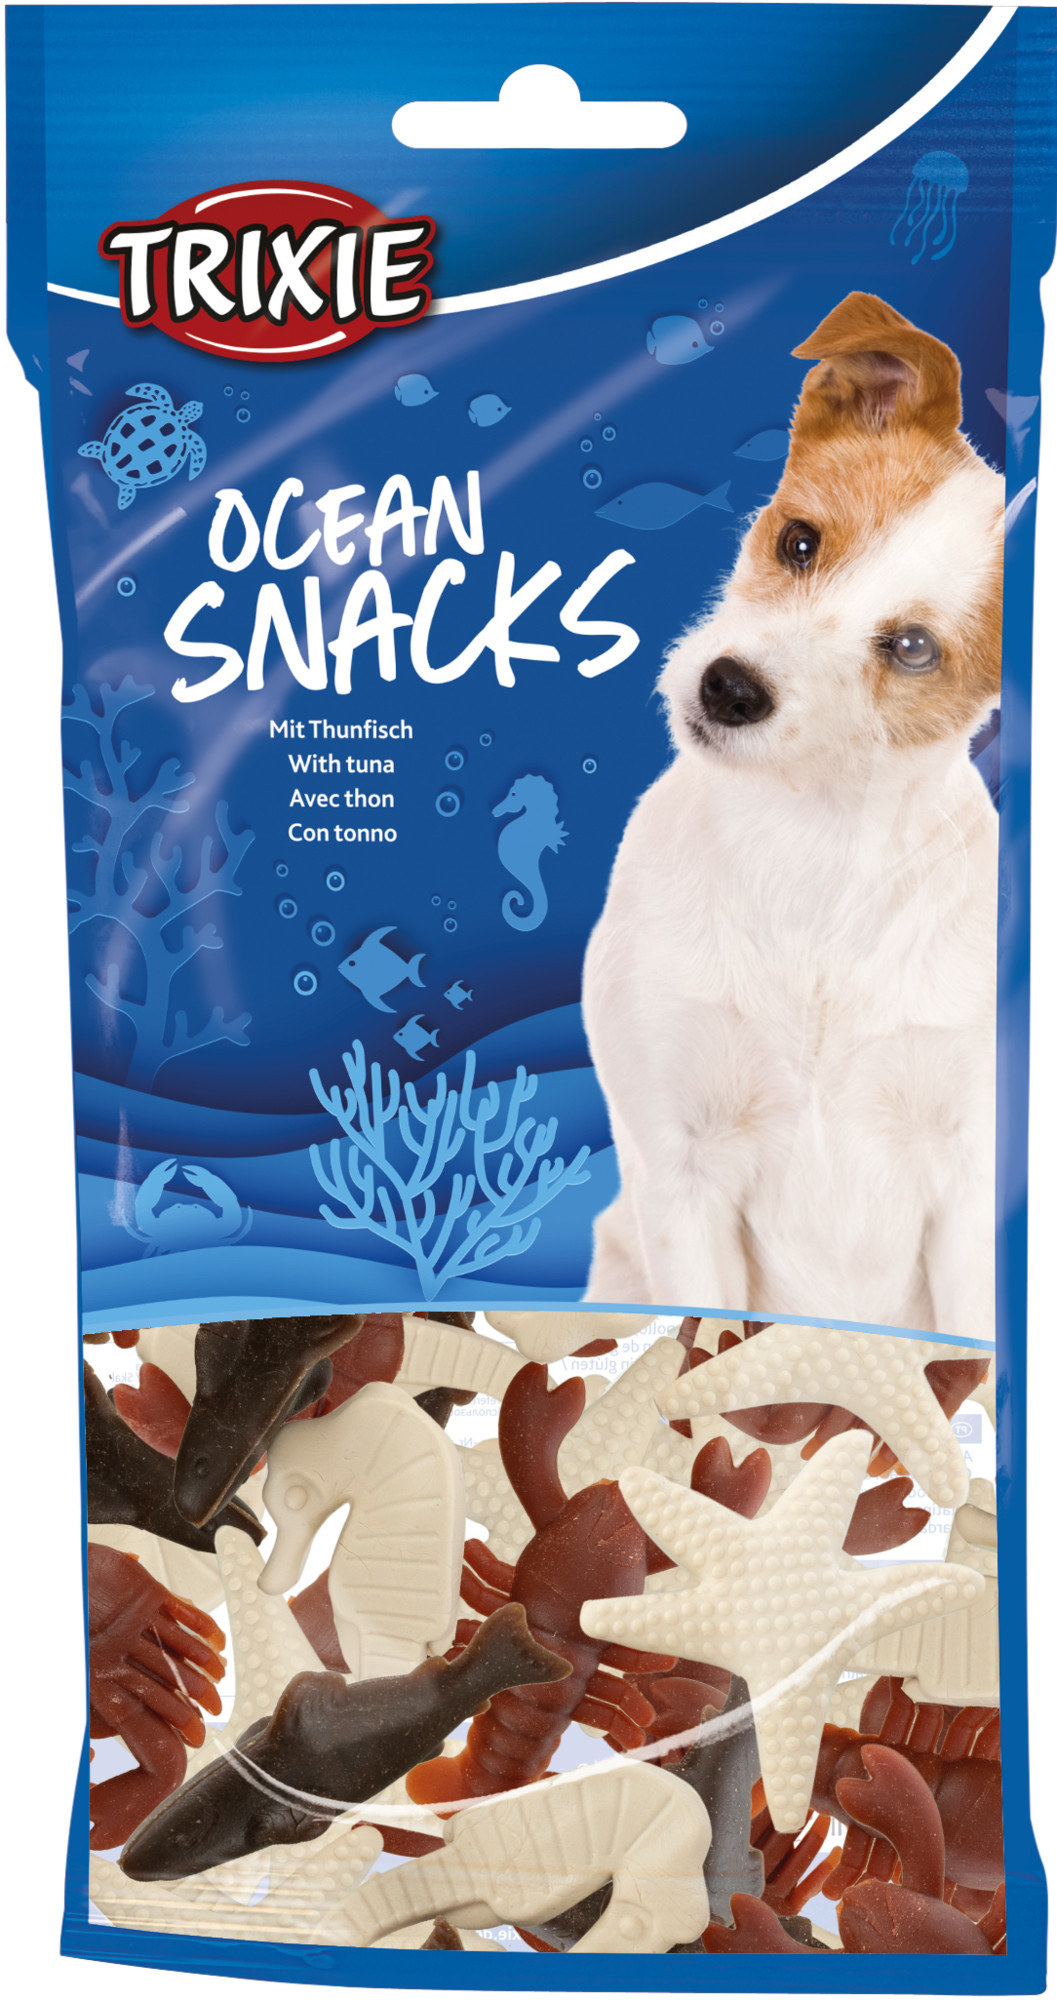 Trixie Ocean Snacks com atum para cão